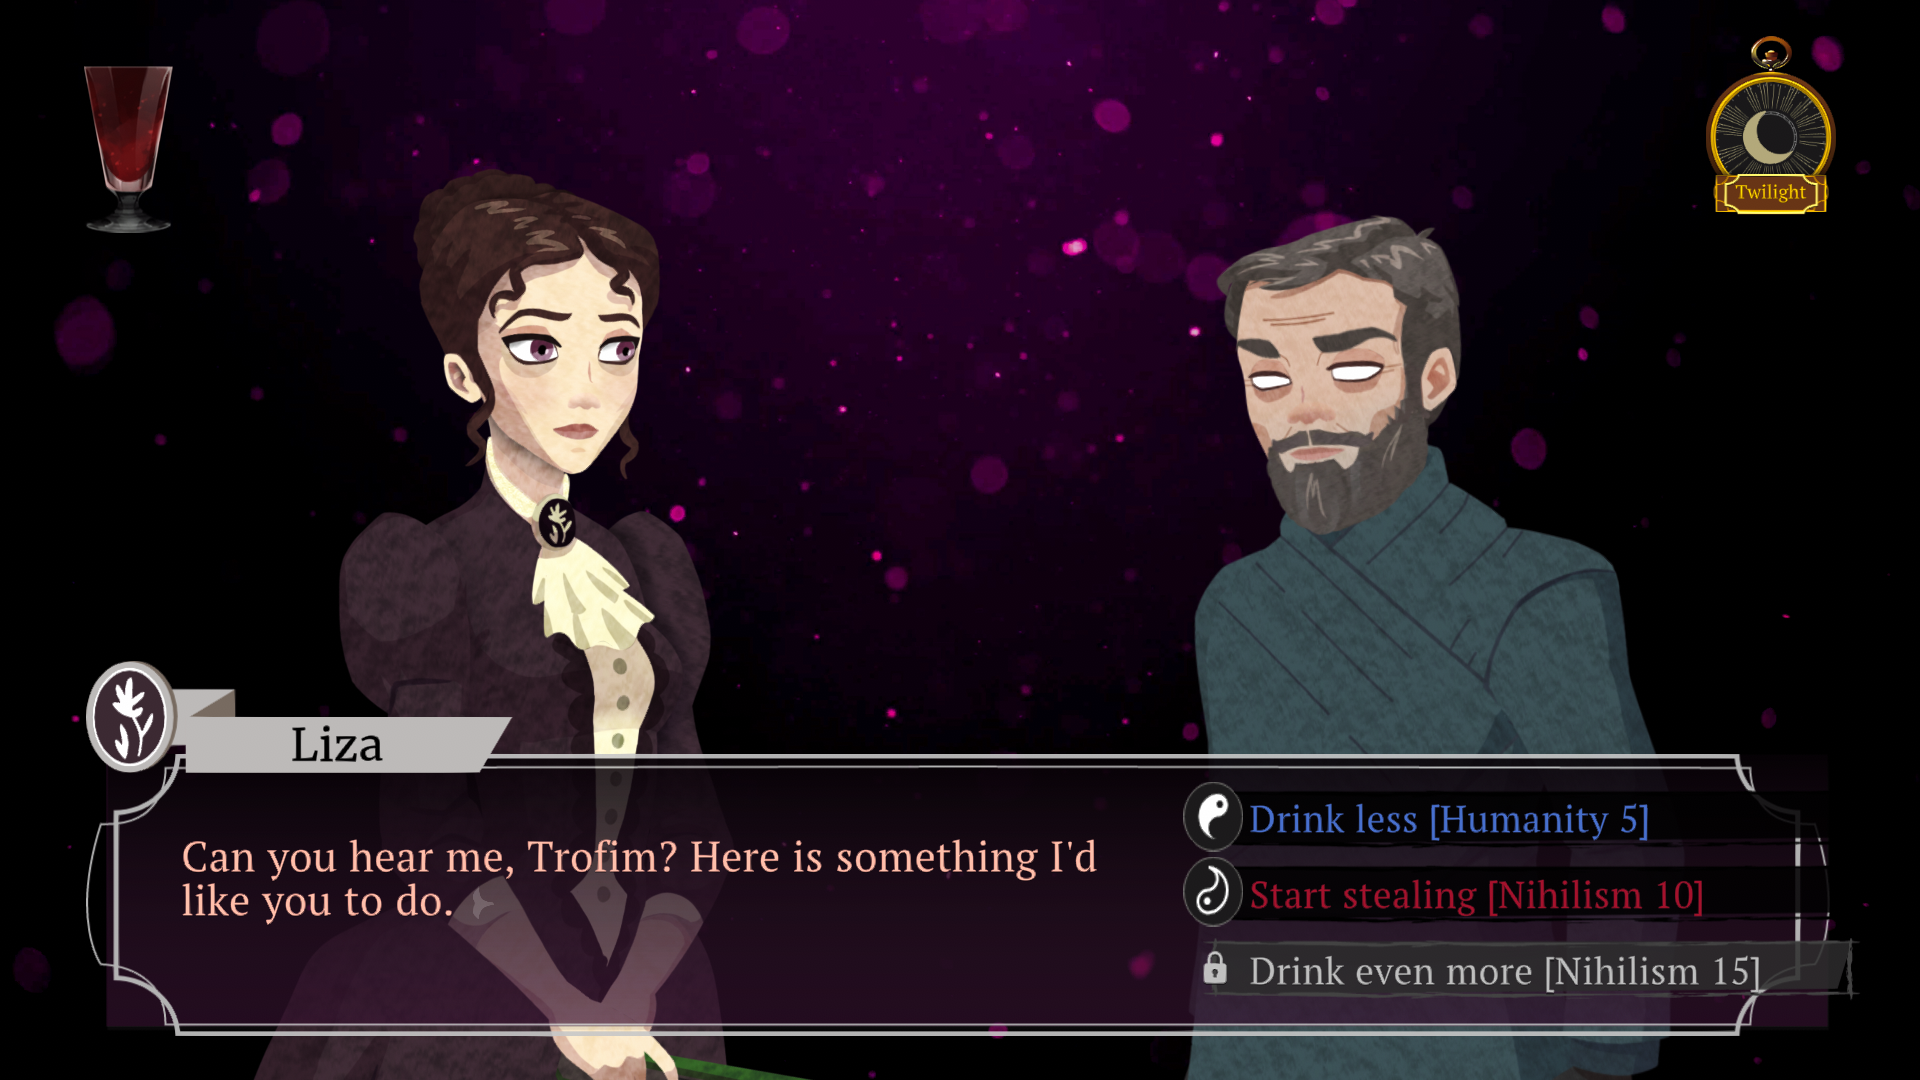 Capture d'écran de Cabernet d'une conversation entre Lisa et un vampire masculin